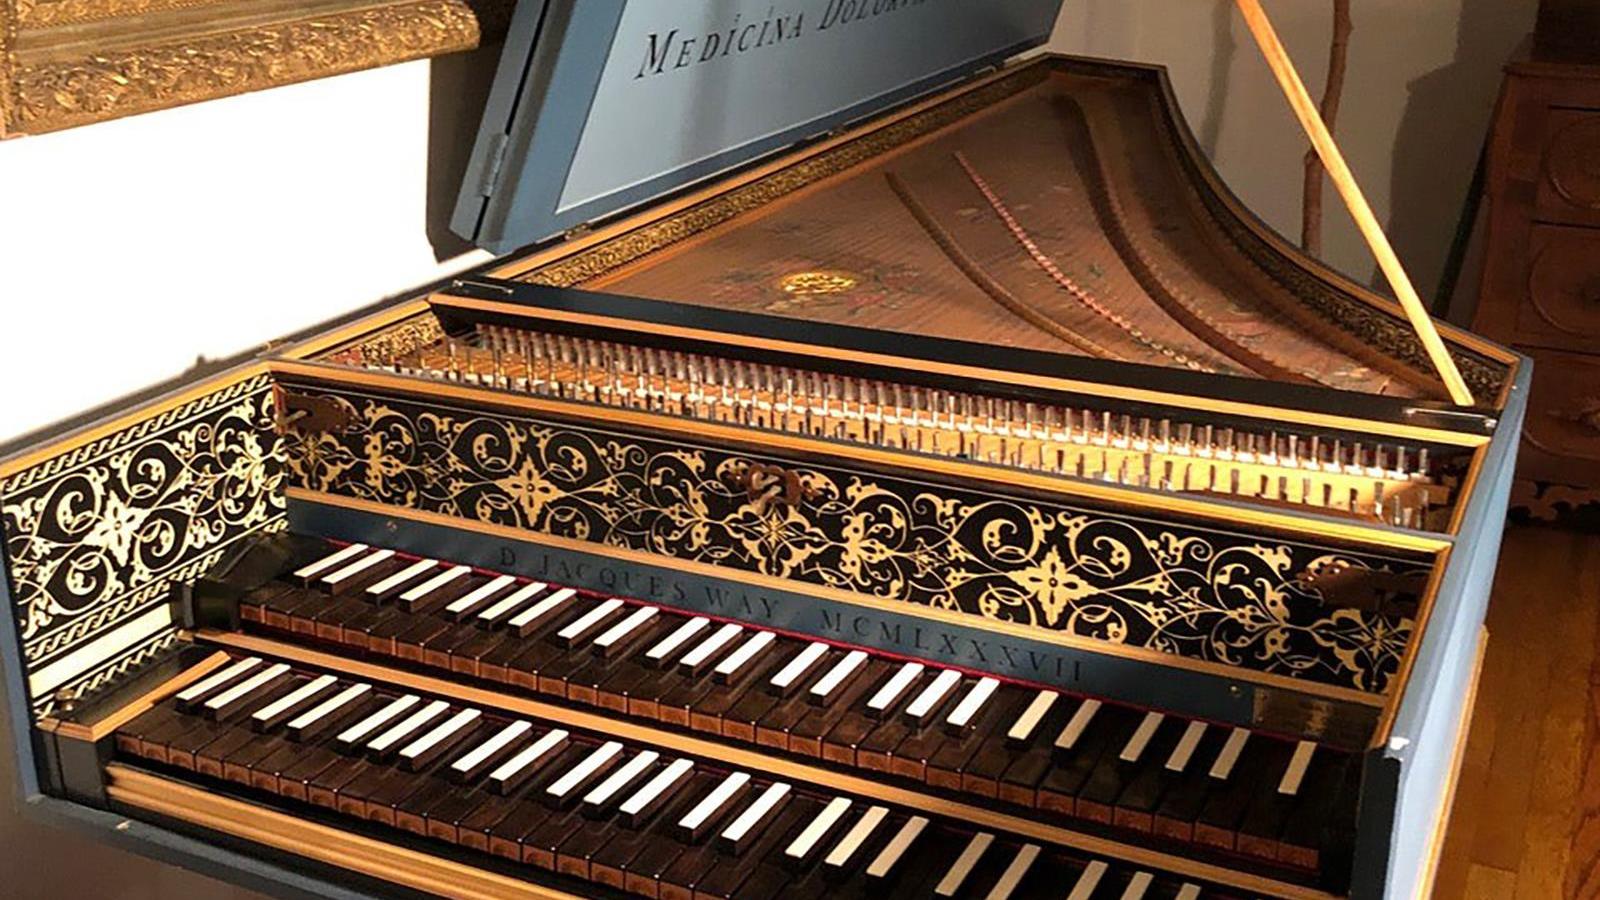 Un clavecin flamand légué à l'Université Mount Allison 
Un clavecin flamand légué à l'Université Mount Allison